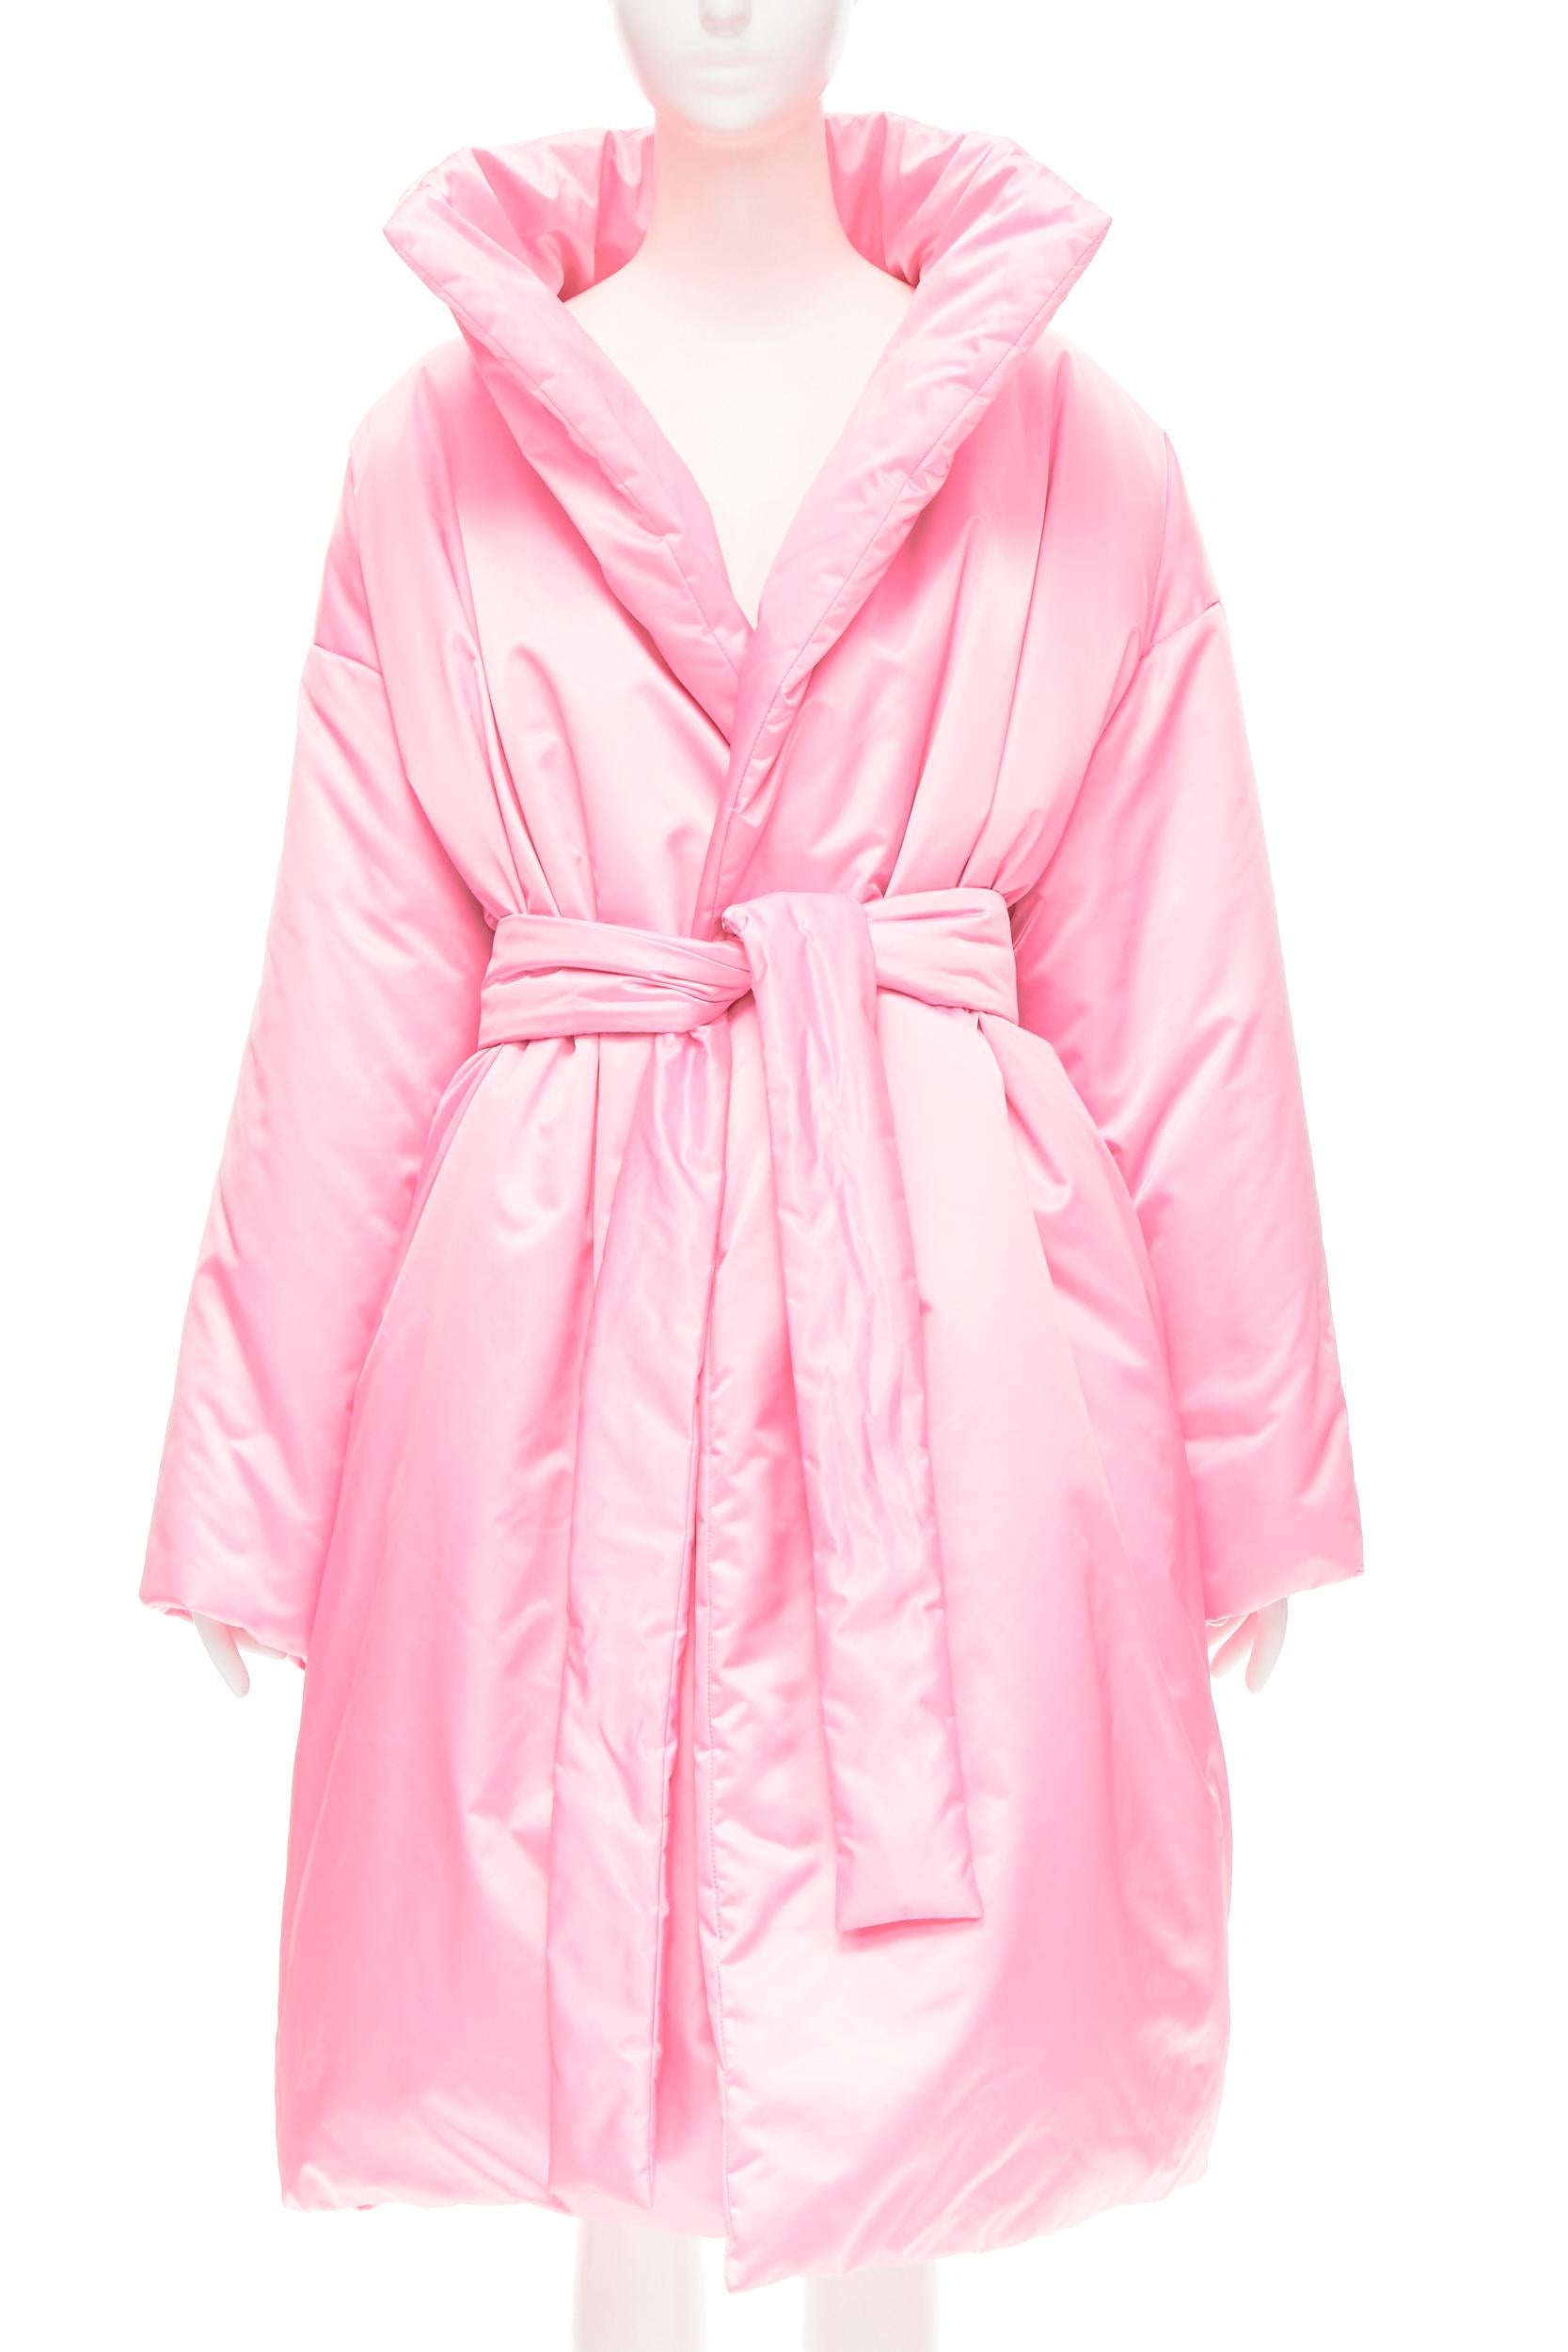 BALENCIAGA Demna - Robe manteau de défilé à ceinture en nylon et satin rose, matelassé, taille S, état neuf Neuf à Hong Kong, NT